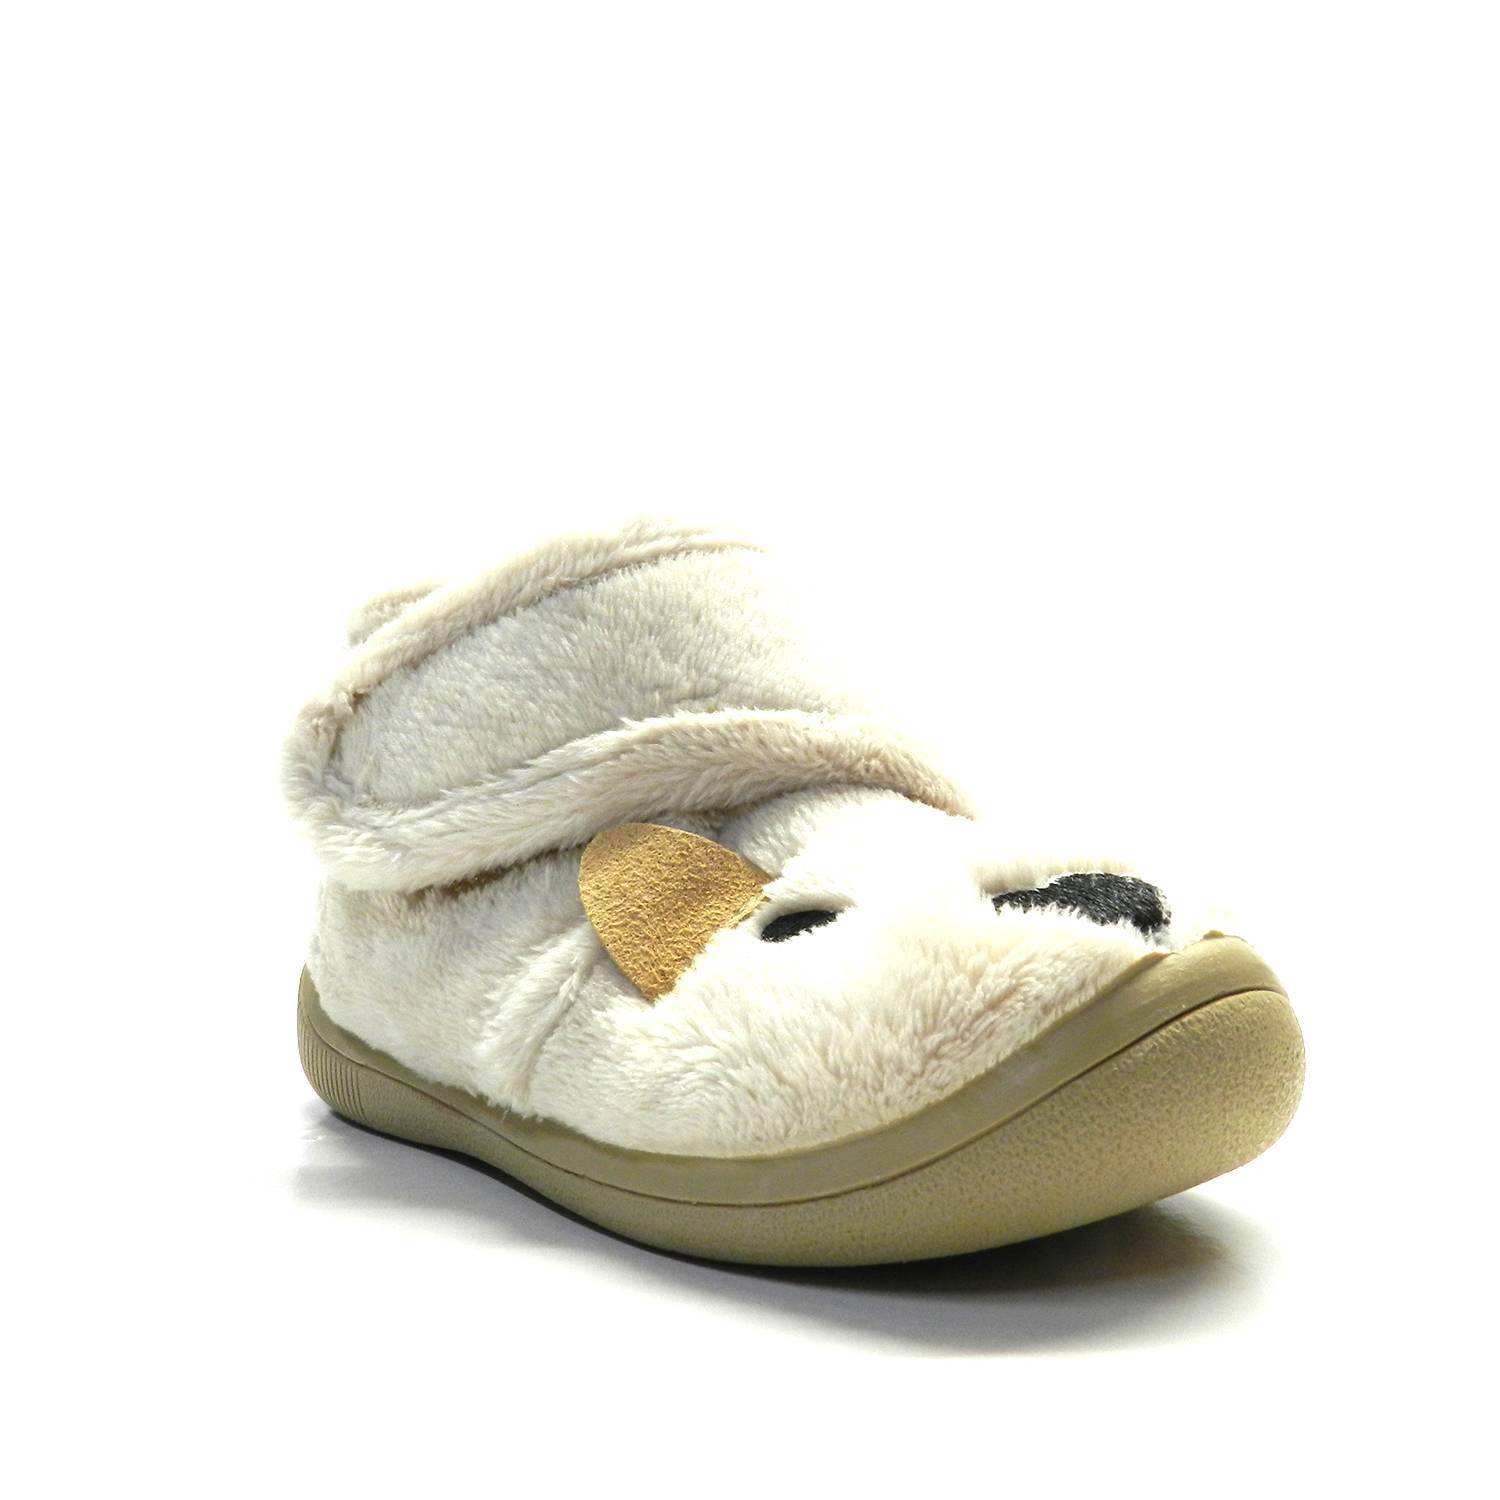 Zapatillas de casa infantil de la marca Gioseppo modelo Belovo en color beige. Zapatillas de casa tipo botita con motivos de animales elaborada en material suave y calentito. Con cierre de velcro ajustable. Cálido forro textil.  Suela de goma natural. ¡Zapatillas cálidas y flexibles!